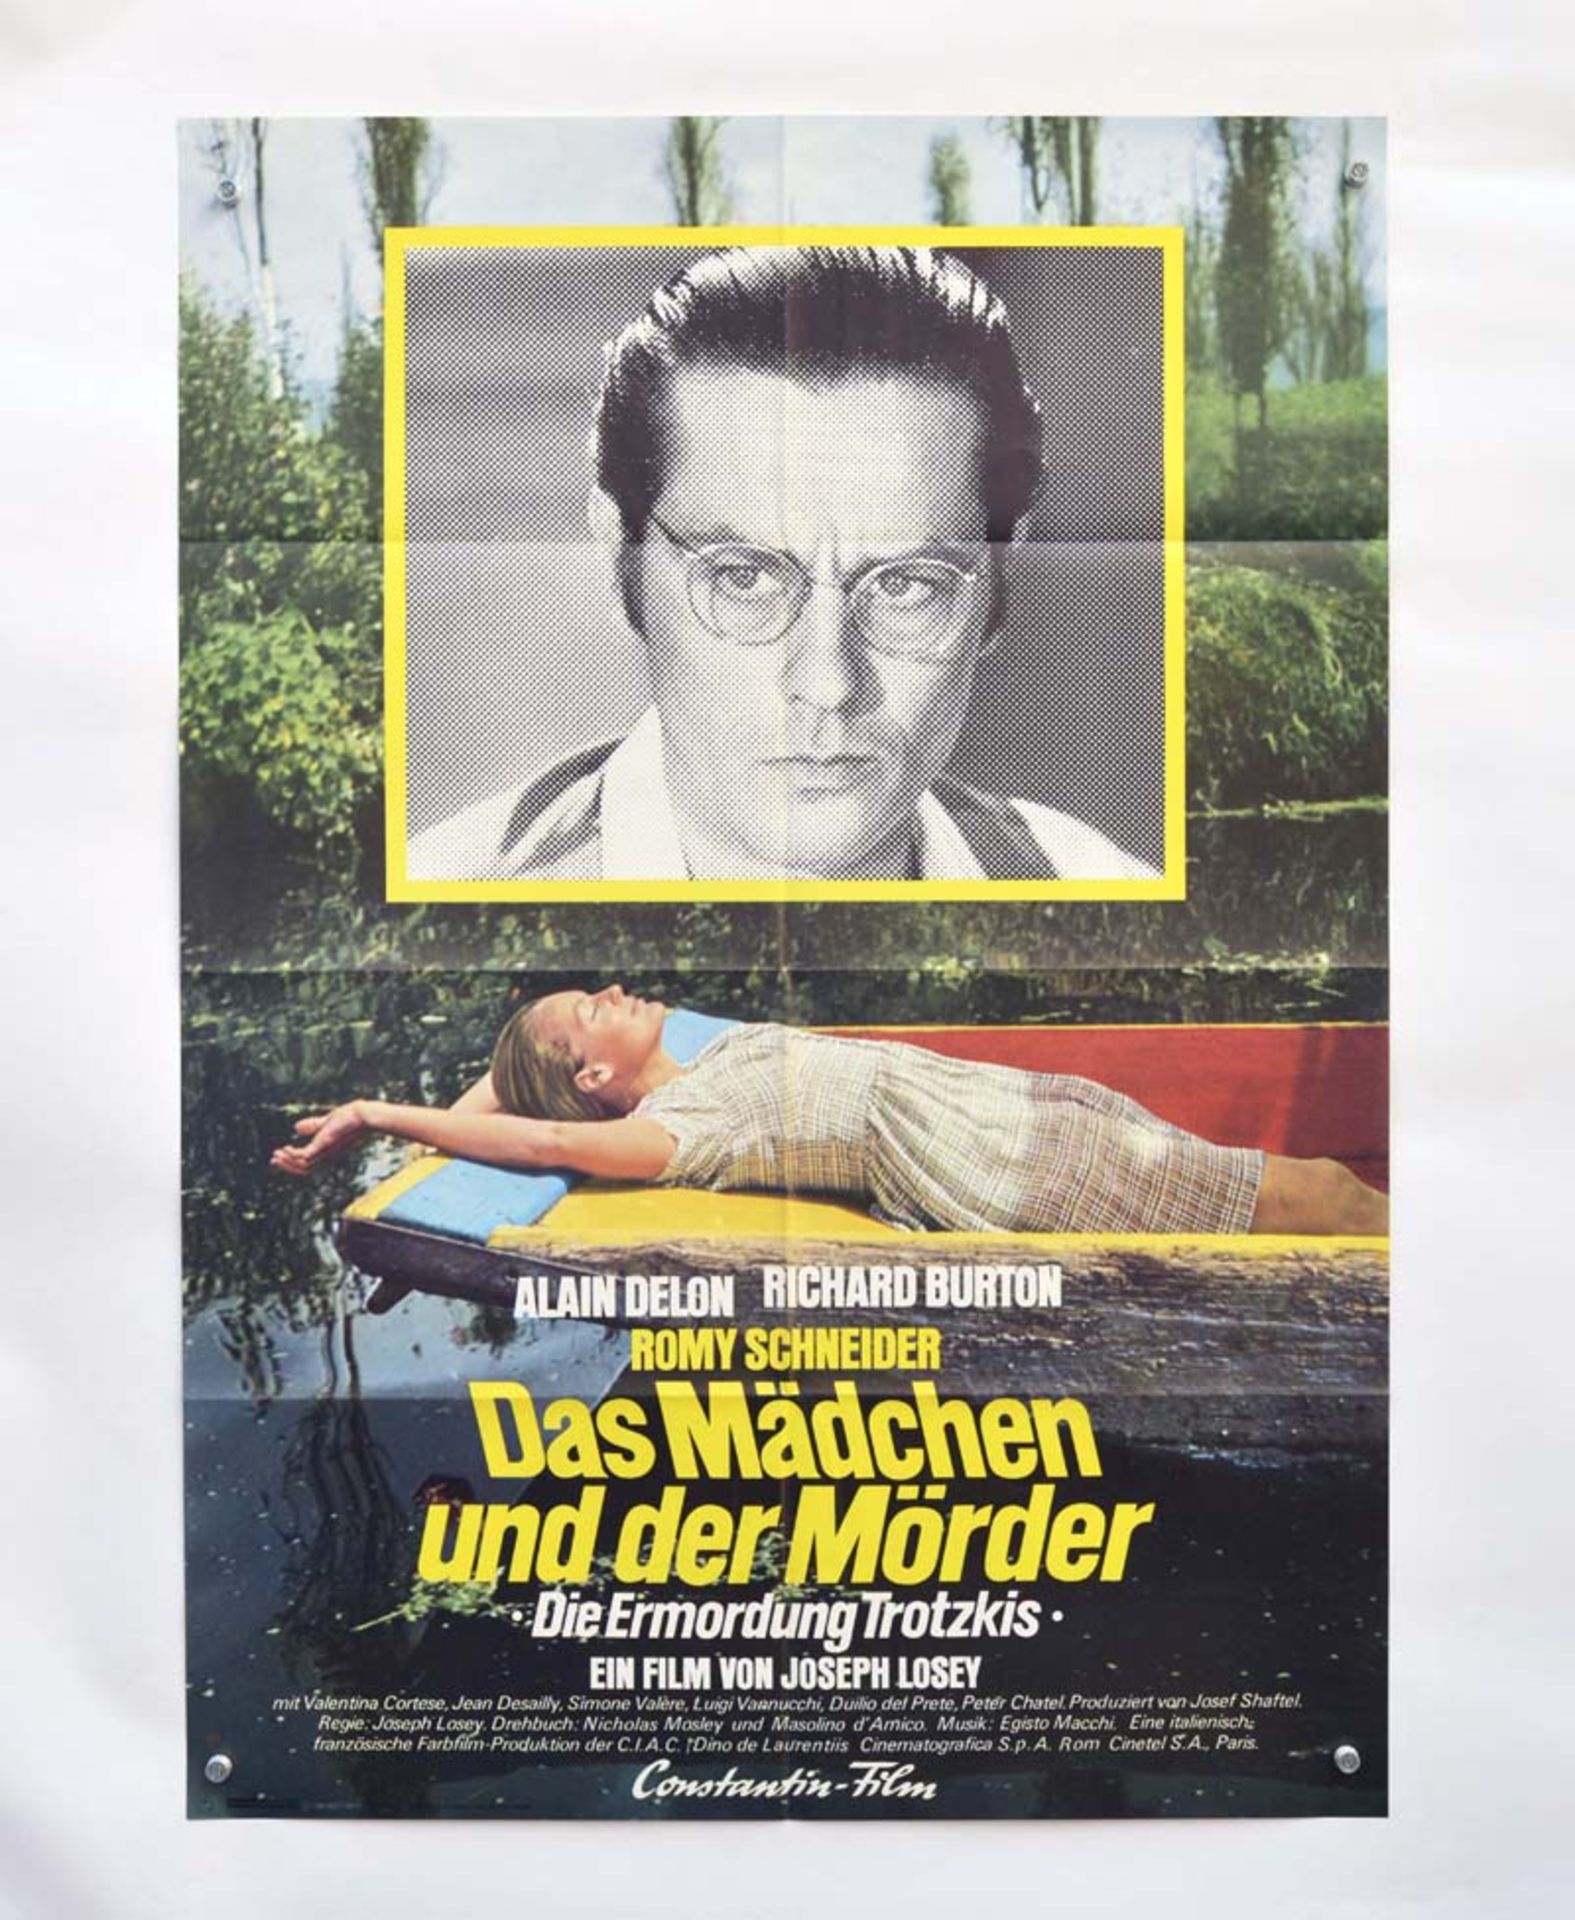 Filmplakat "Das Mädchen und der Mörder", 60x84 cm, Knickfalten, sonst sehr guter Zustand